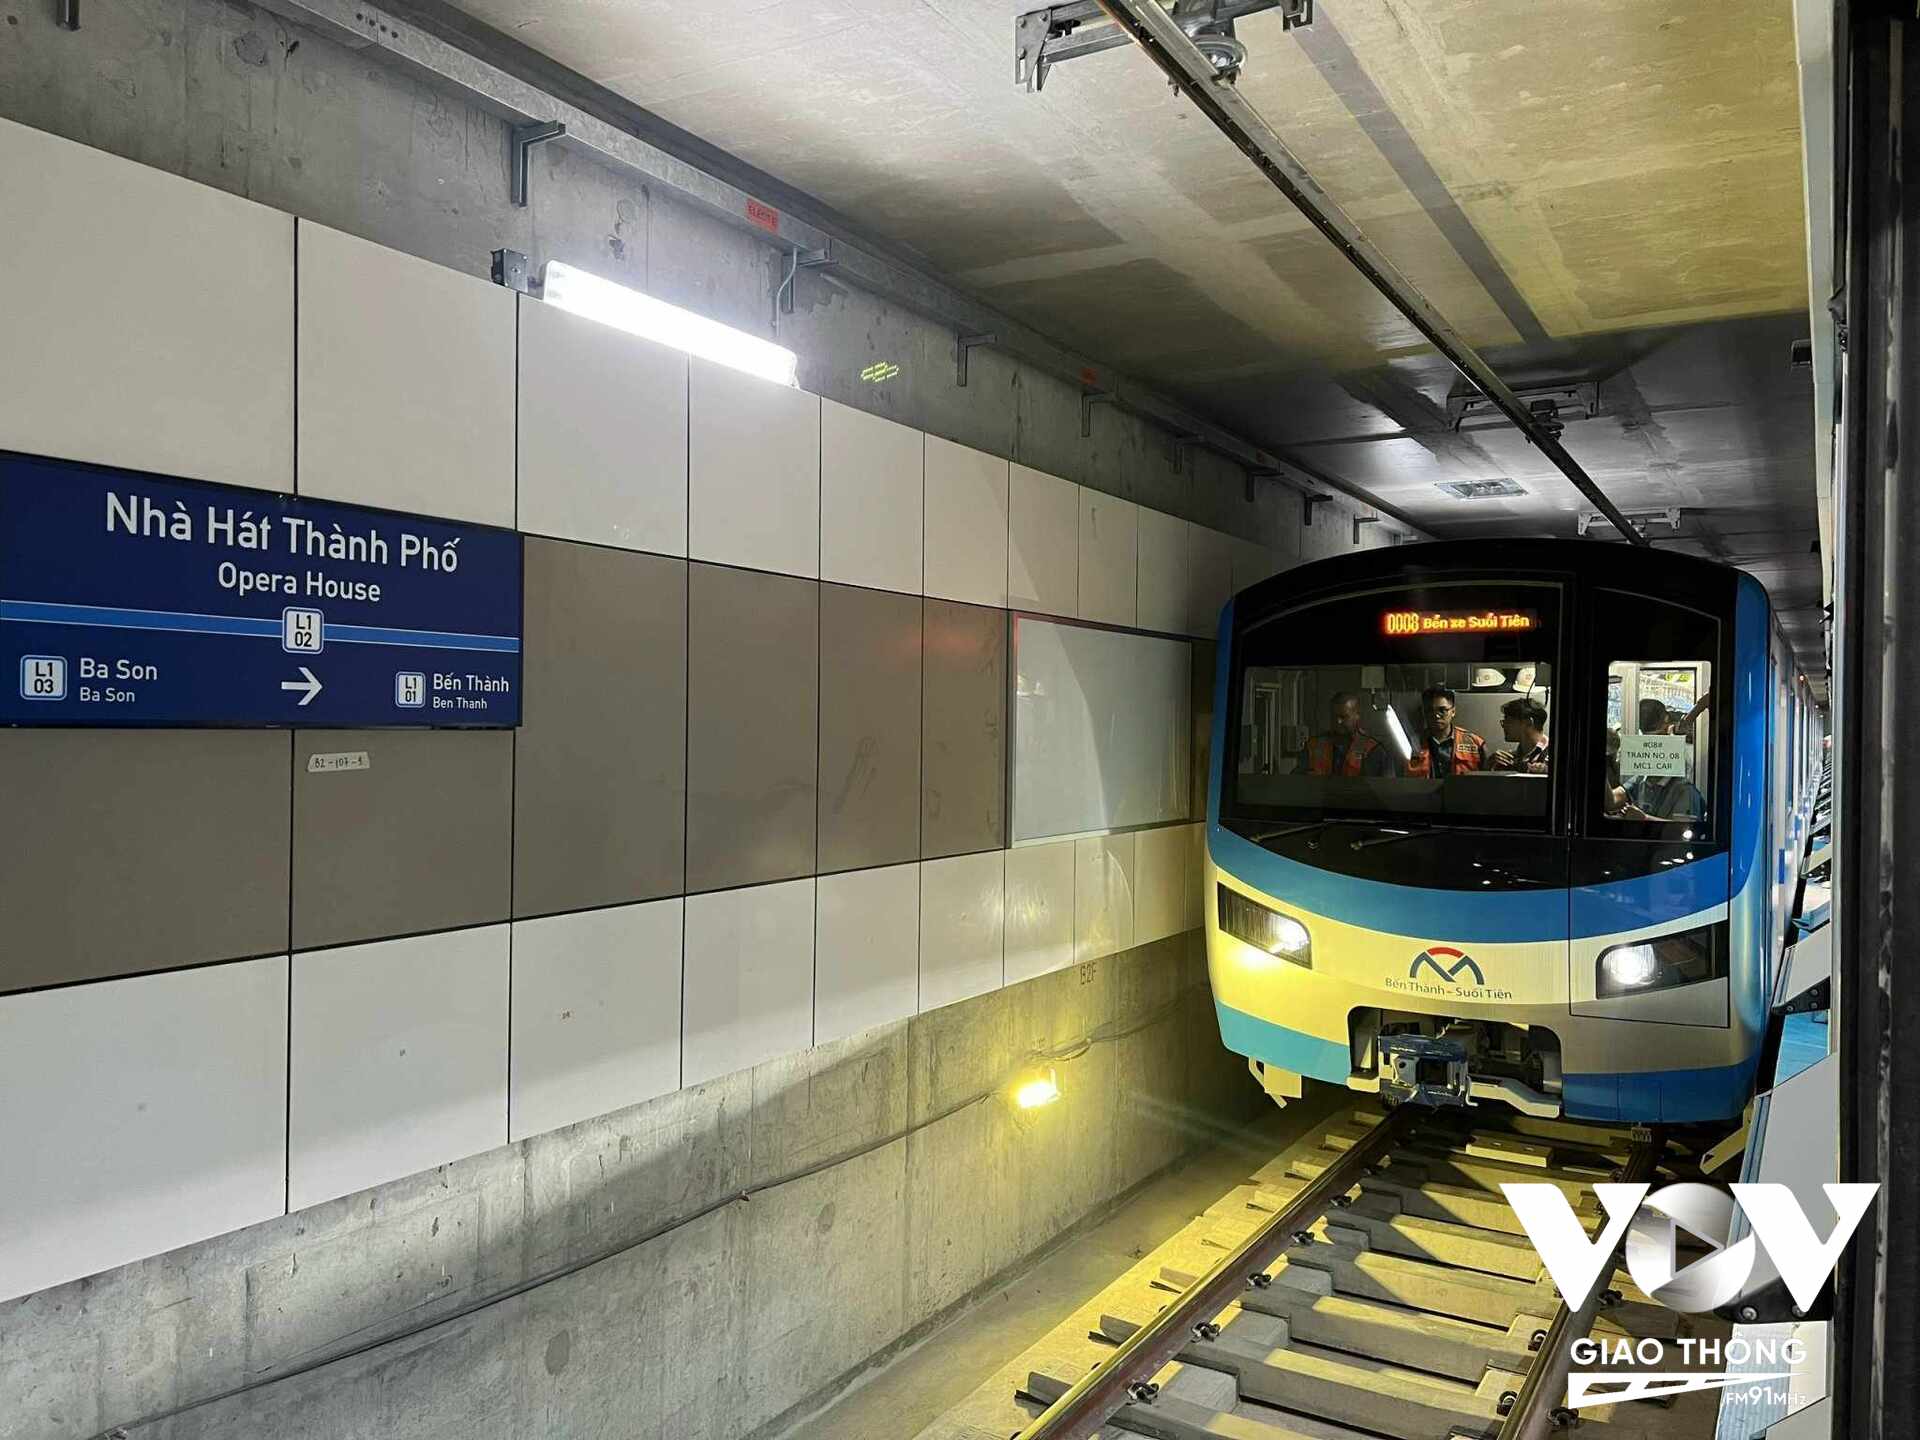 Ngày 29/8, Tuyến Metro số 1 (Bến Thành - Suối Tiên) bắt đầu chạy thử nghiệm trên toàn tuyến, bao gồm cả đoạn trên cao và đoạn đi ngầm, từ ga Bến xe Suối Tiên đến ga trung tâm Bến Thành. Ảnh minh hoạ